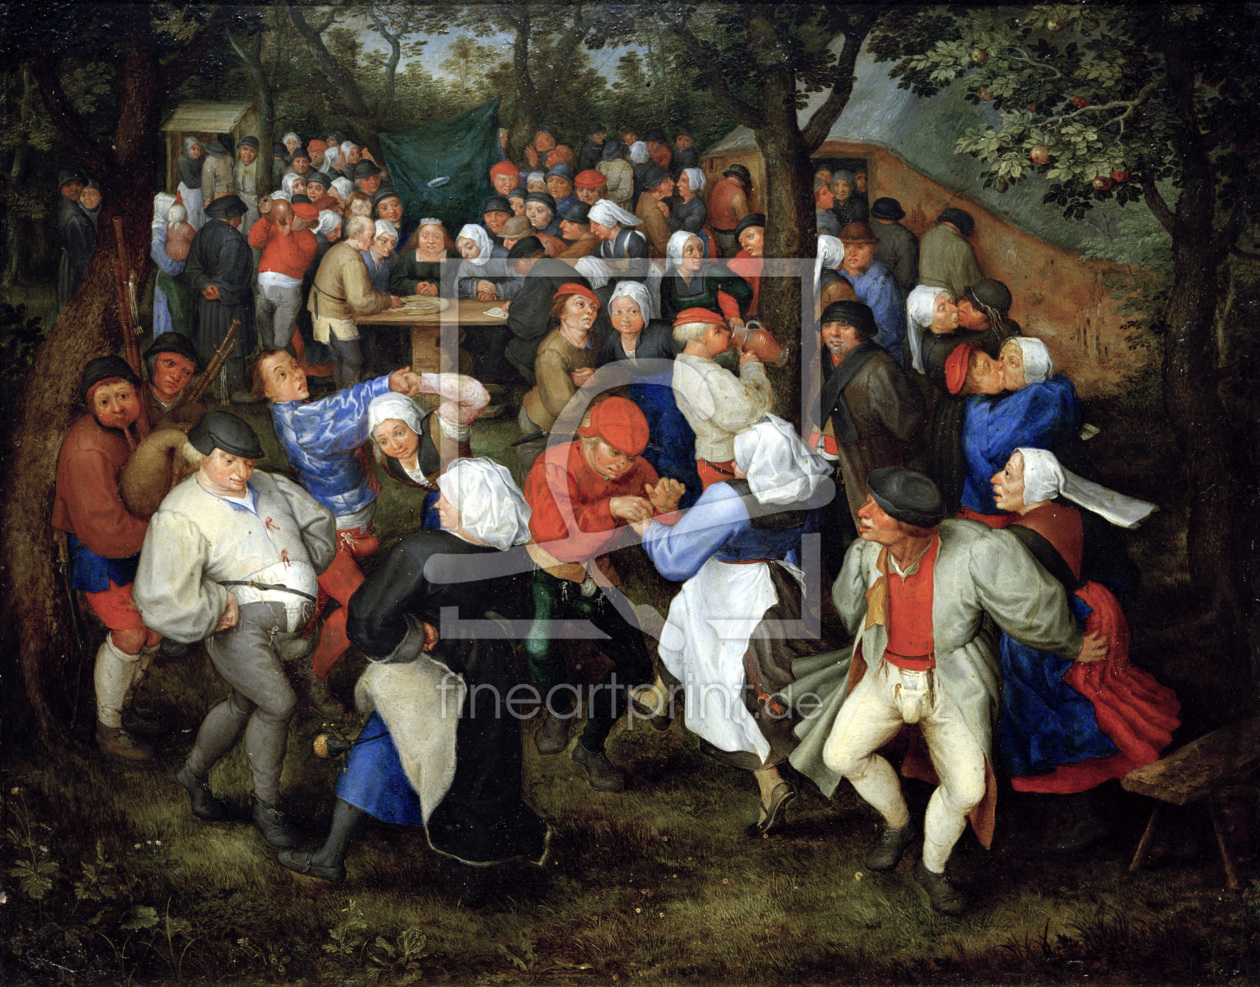 Bild-Nr.: 30007797 J. Brueghel the Elder, Wedding Dance. erstellt von Jan Brueghel der Ältere